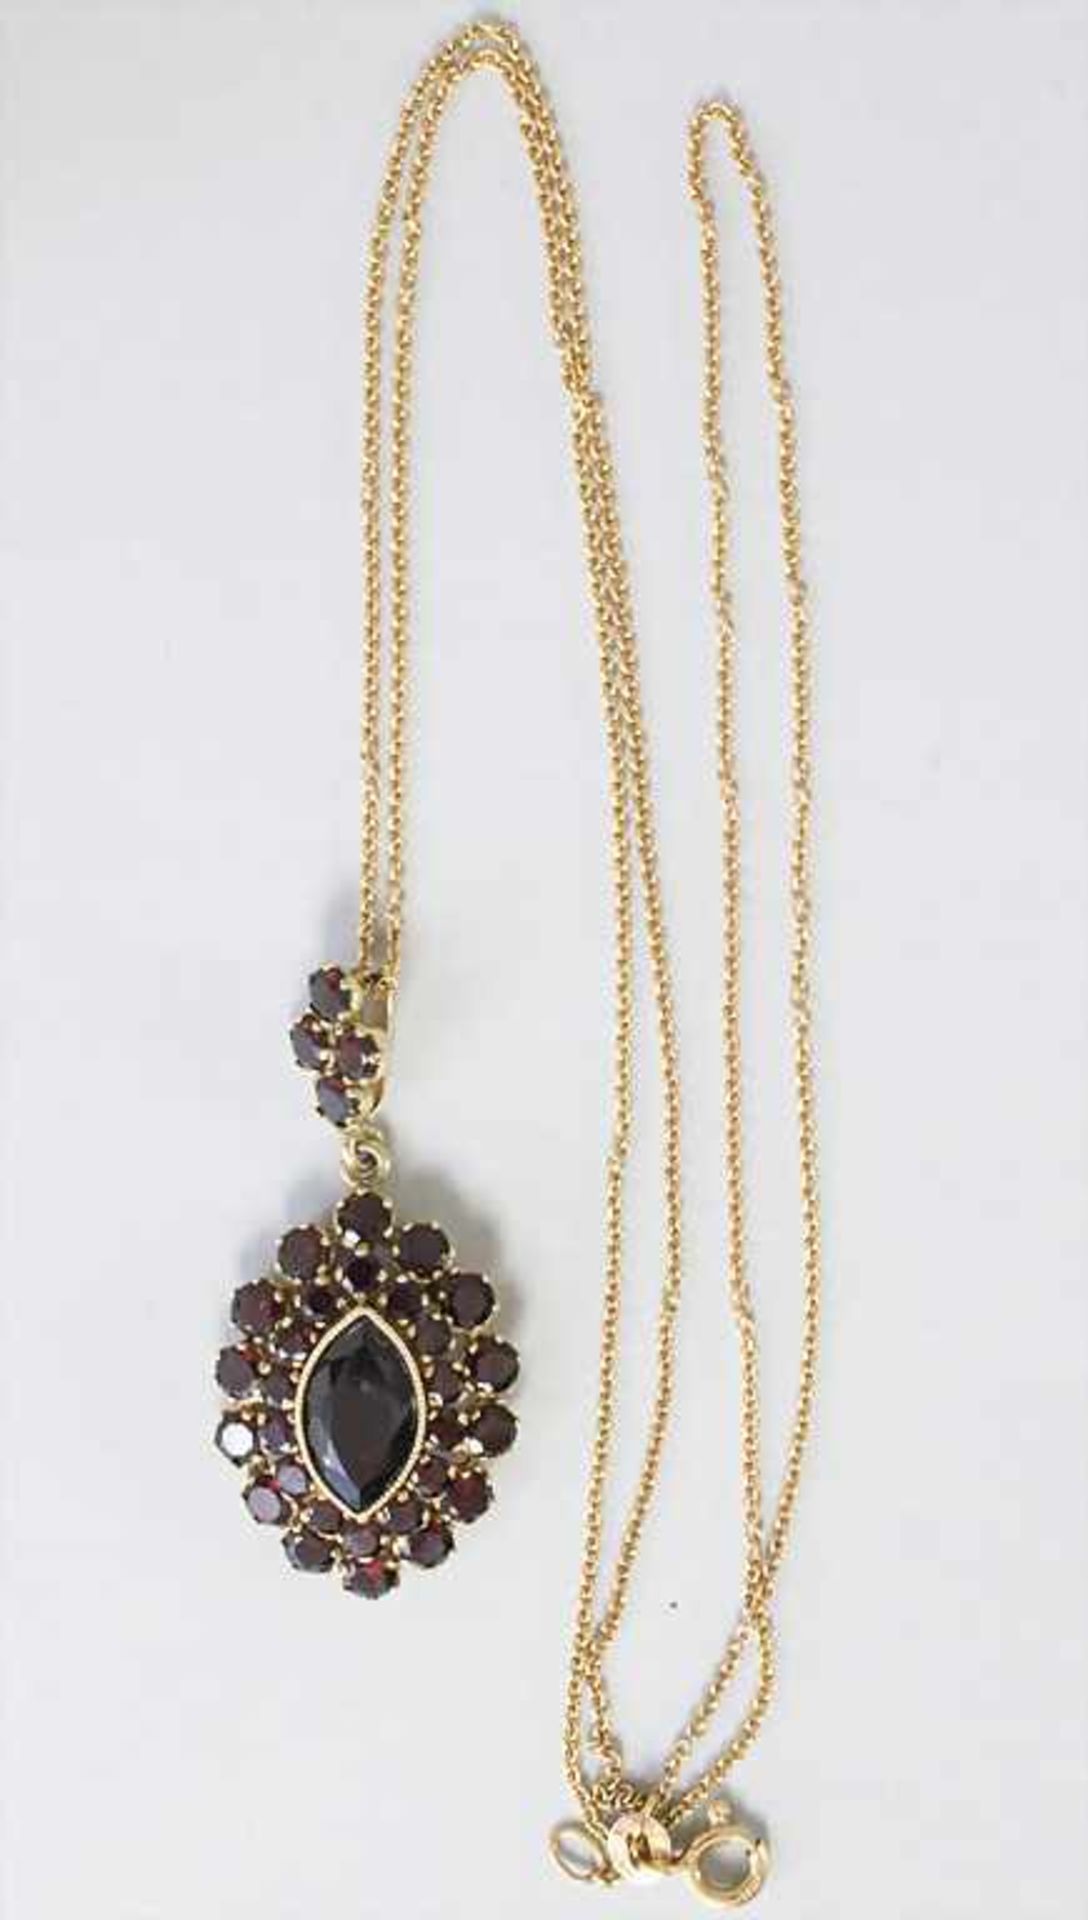 Goldkette mit Granatanhänger / A gold necklace with garnet pendant - Bild 3 aus 3